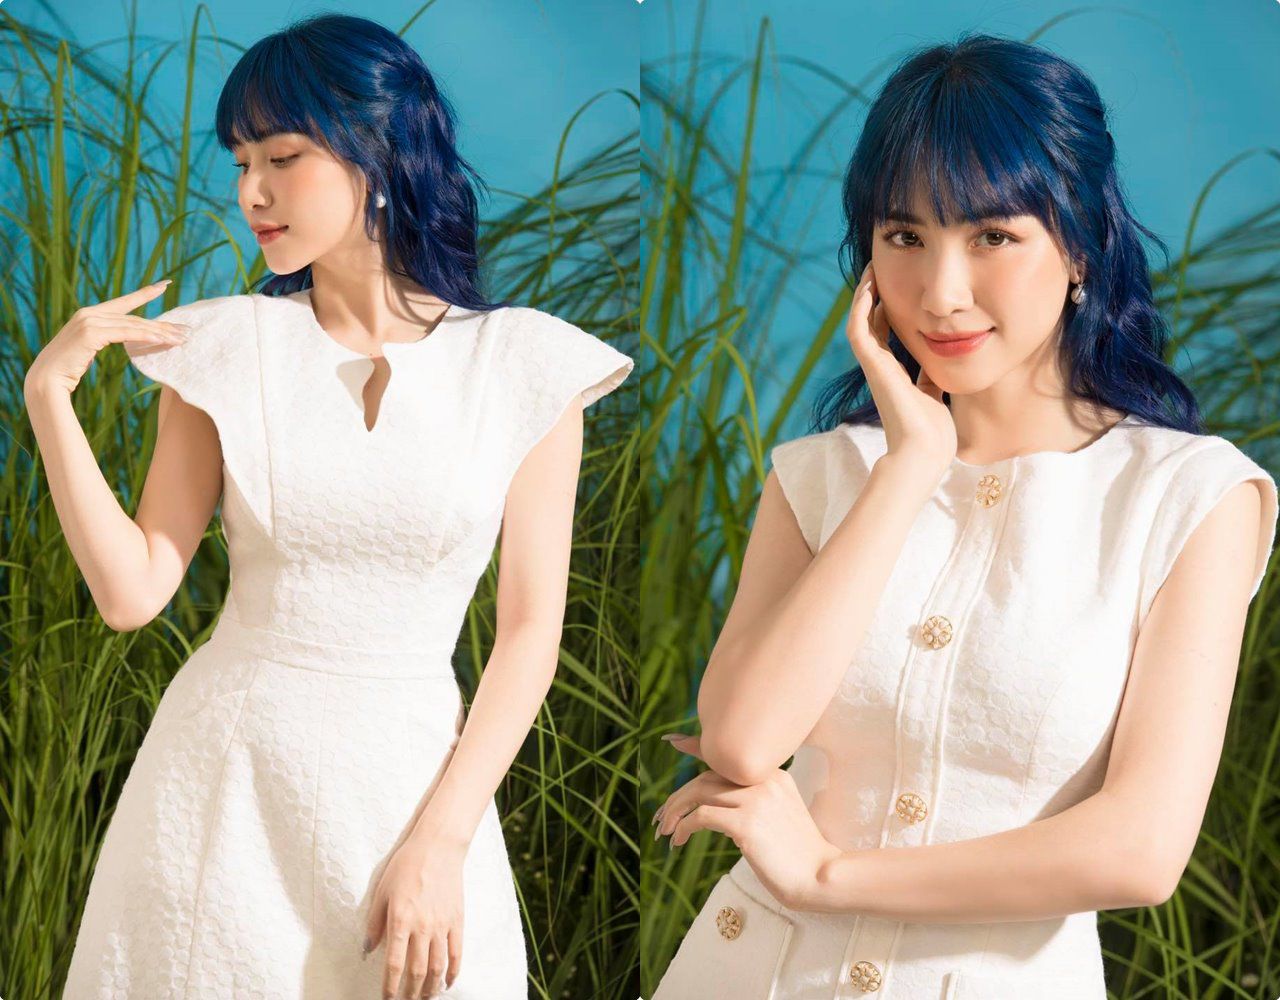 Bao lần lận đận chuyện tóc tai, công chúa Hoà Minzy nay biến hình với mái tóc xanh lạ lẫm - 3